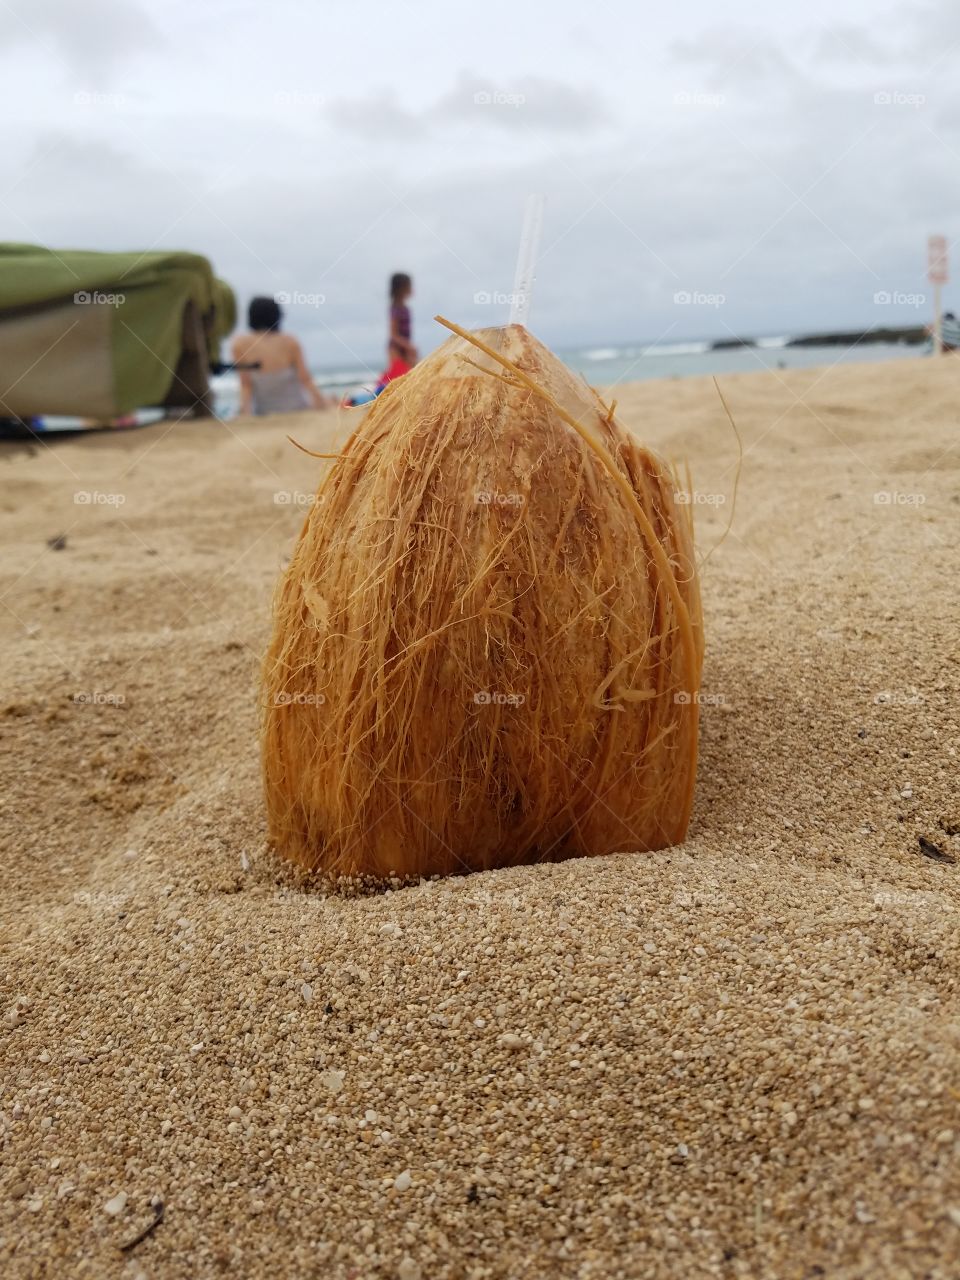 coconut on sandy beach